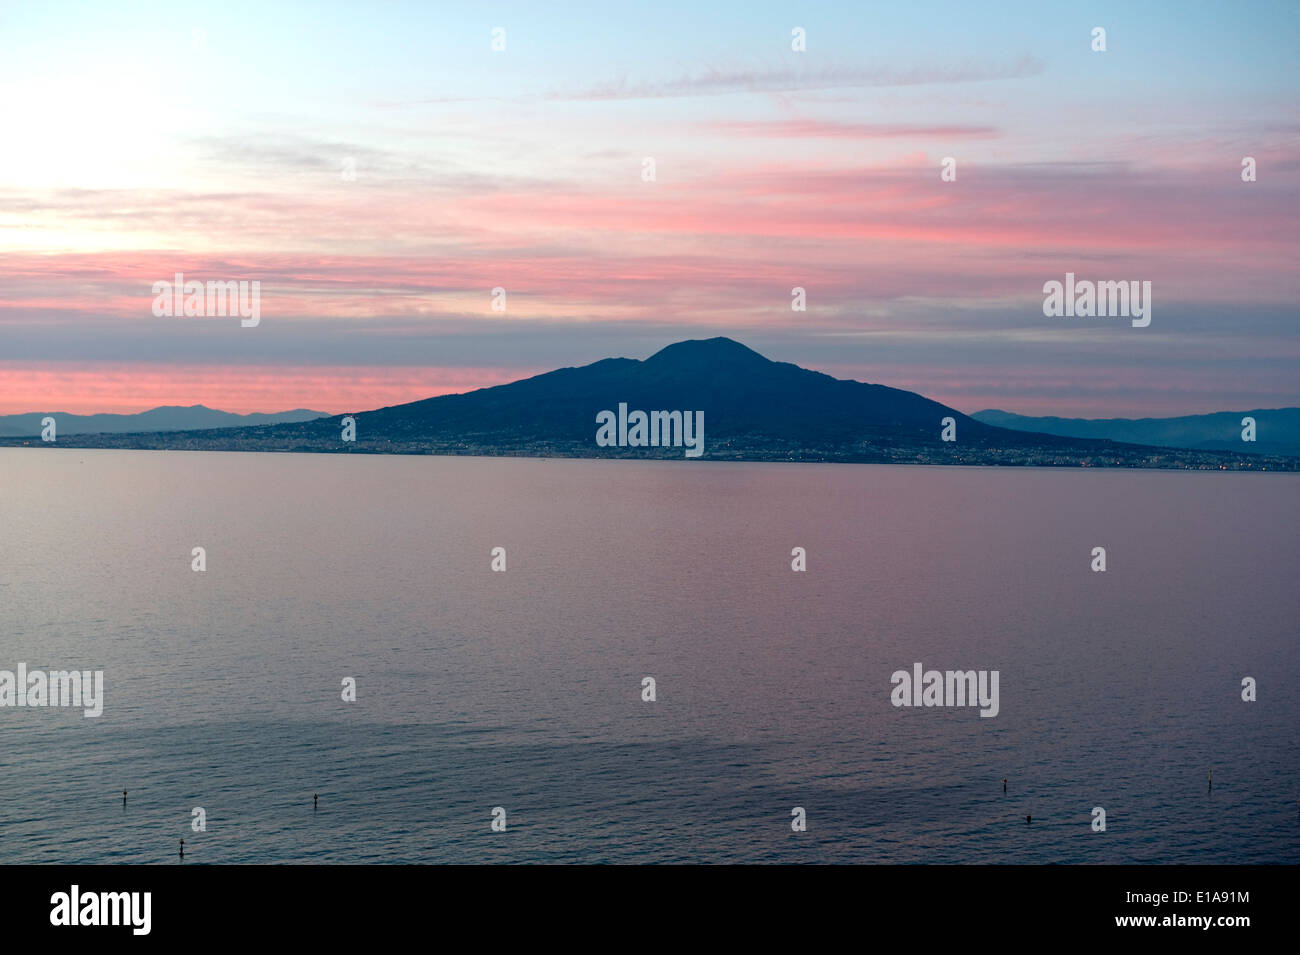 Cielo rosso dietro il Monte Vesuvio, un vulcano attivo, in vista di tutta la baia di Napoli da Sorrento al tramonto Foto Stock